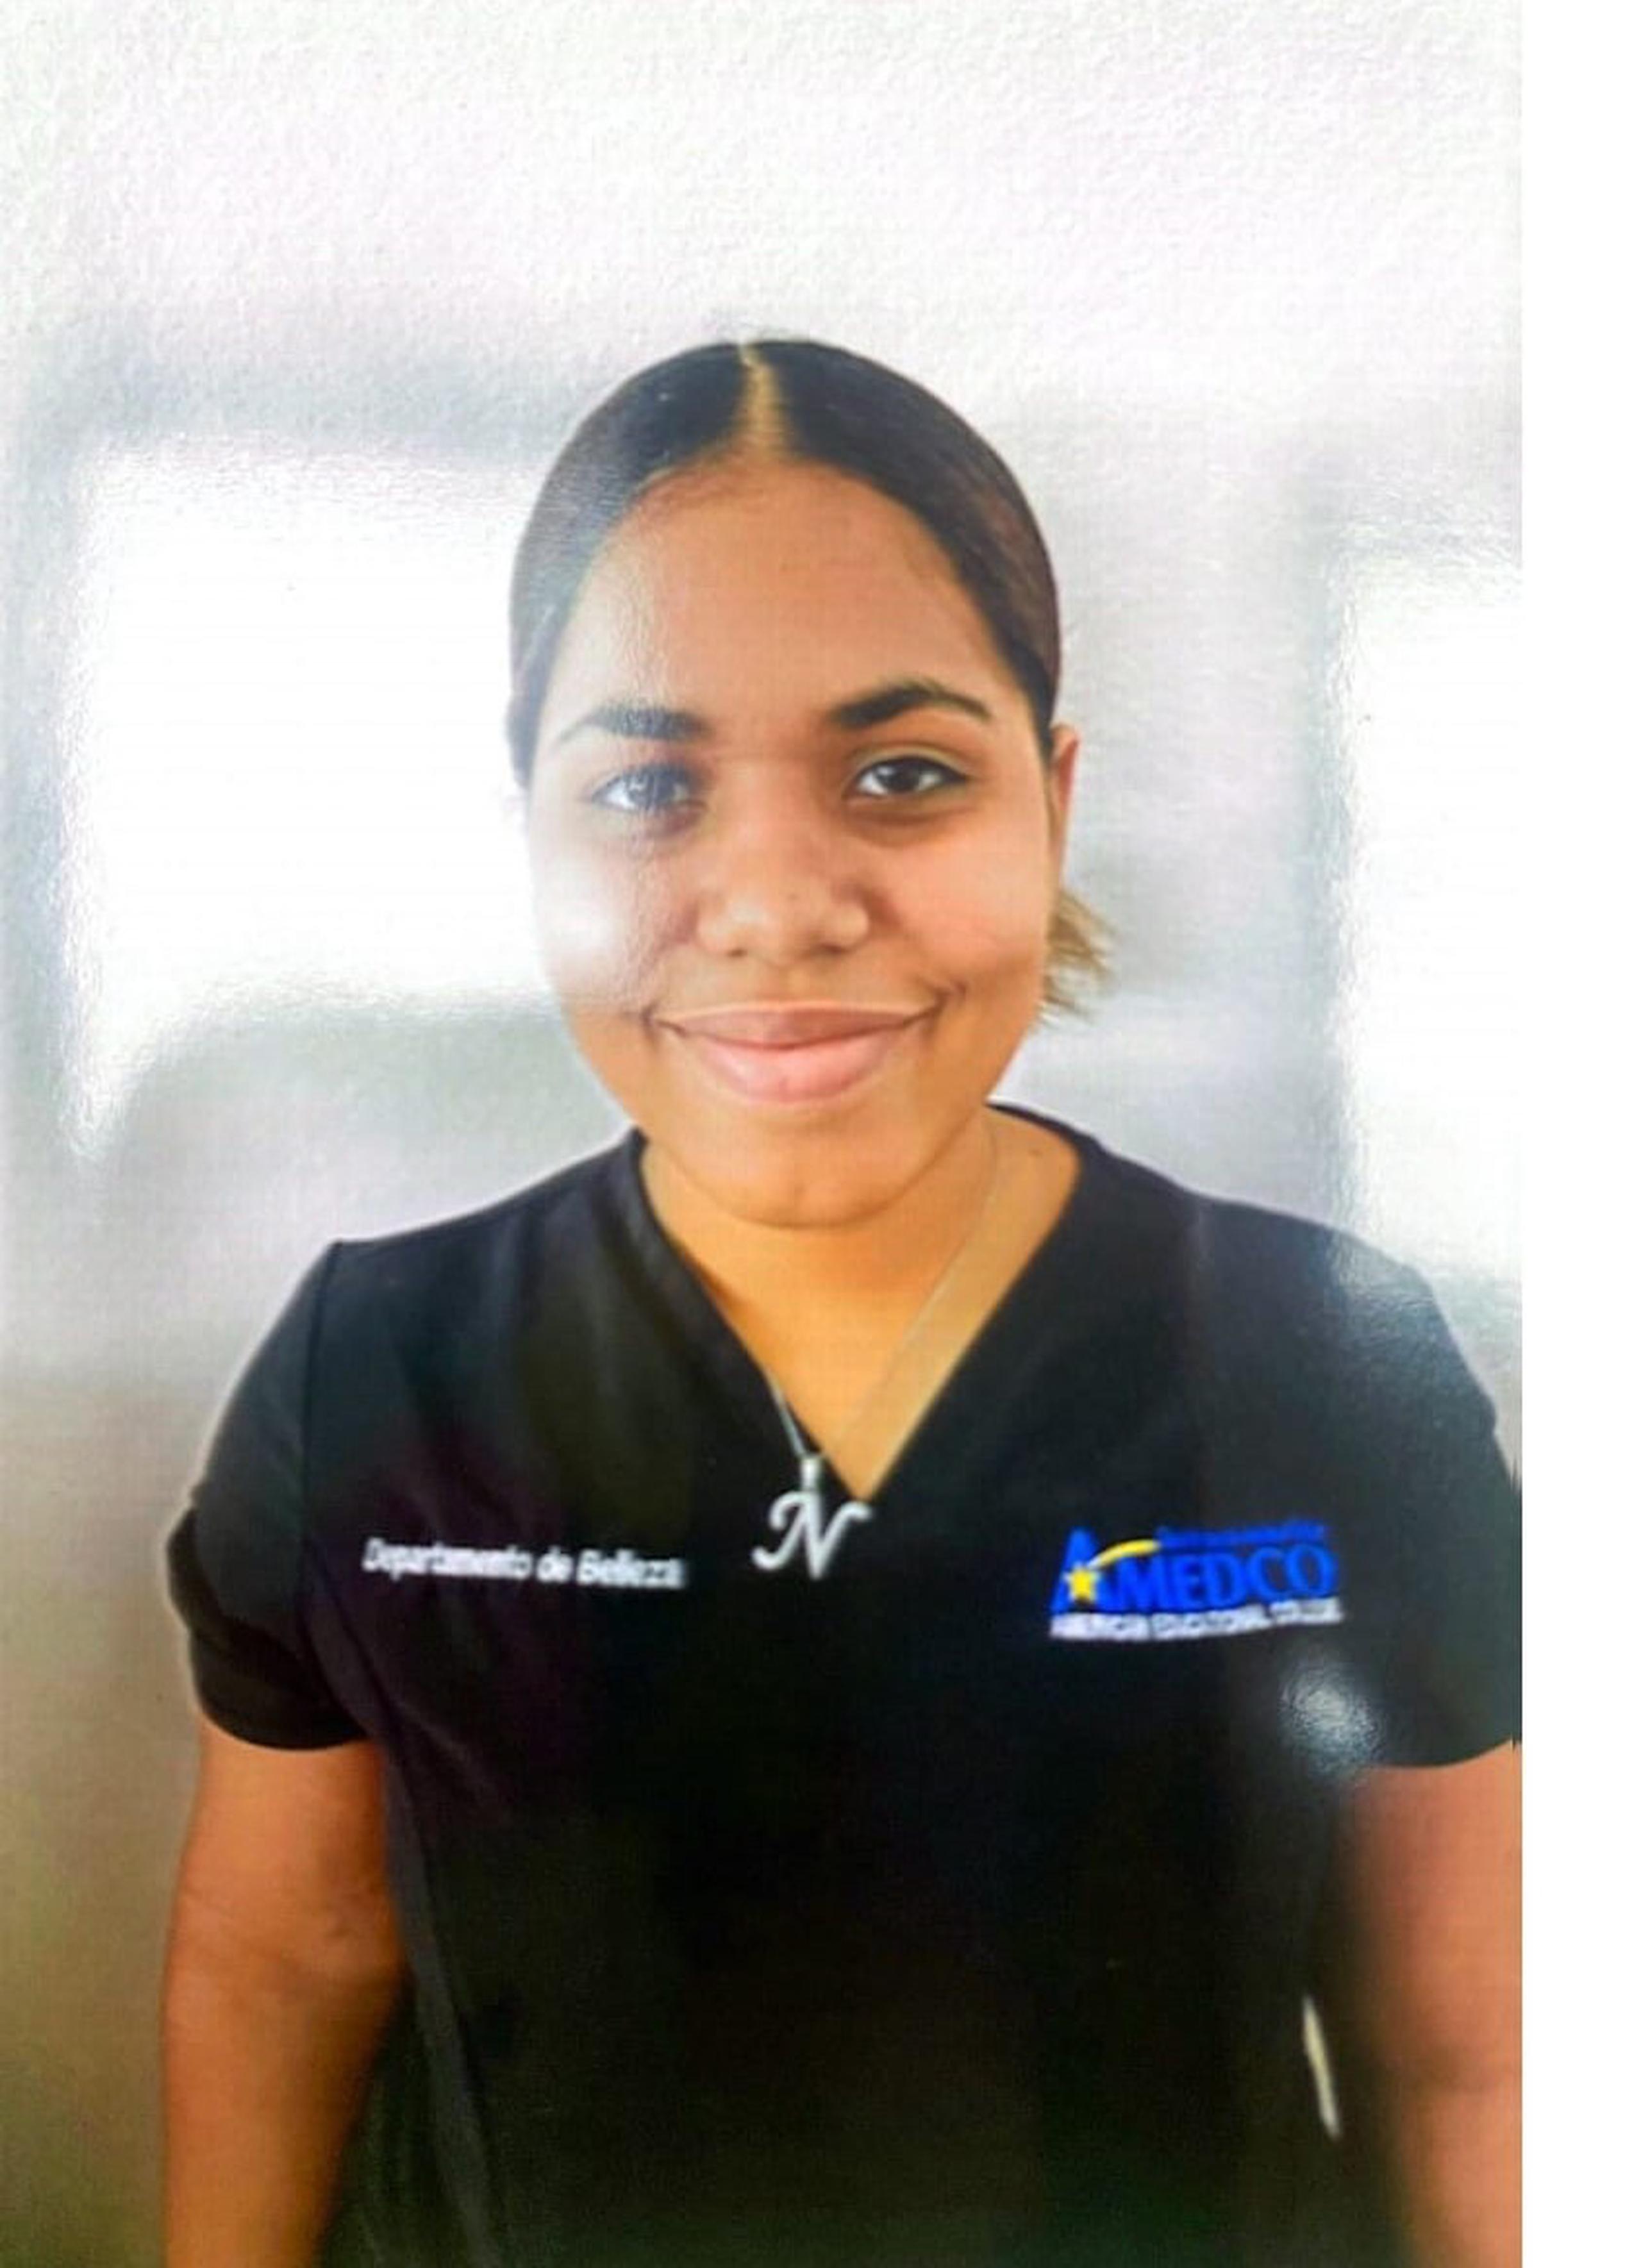 Angélica Naybelis Hernández Mercedes, de 17 años, fue vista por última vez el 20 de julio, en los predios del instituto AMEDCO localizado en la calle Santa Cruz, en Bayamón.